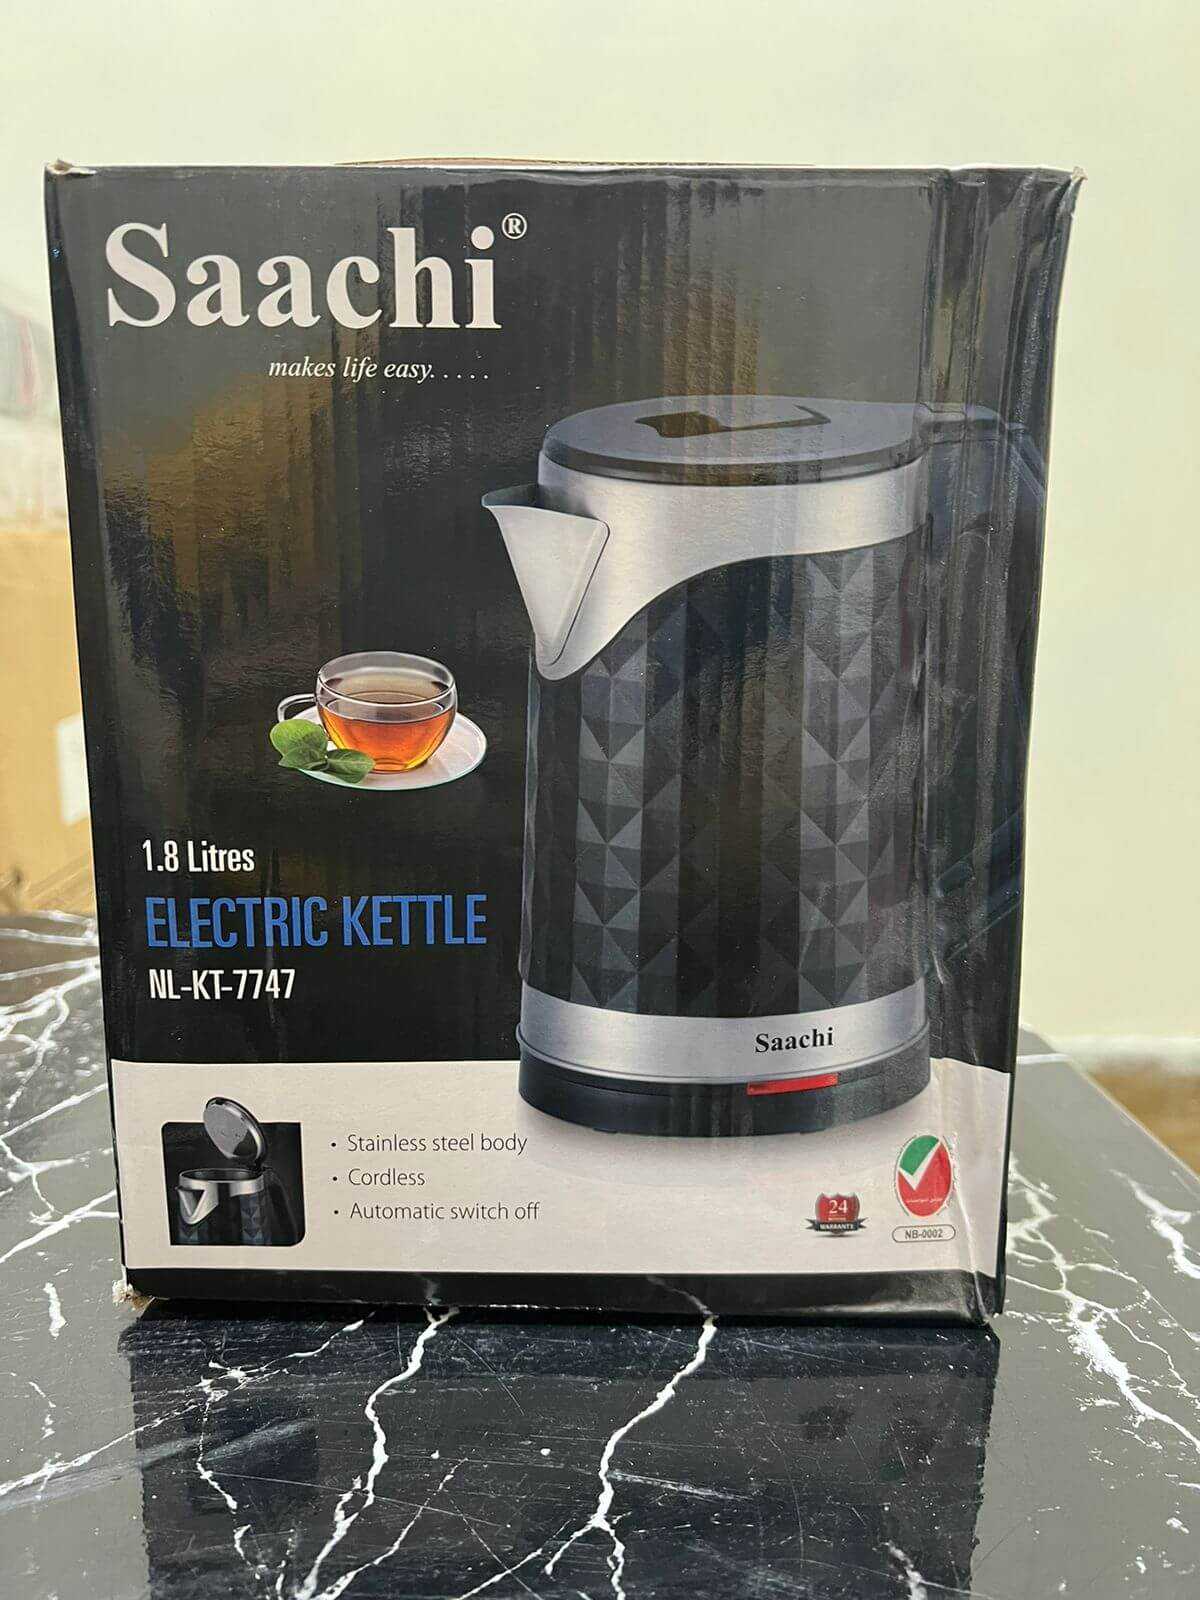 Dubai Lot Imported Saachi Electric Kettle